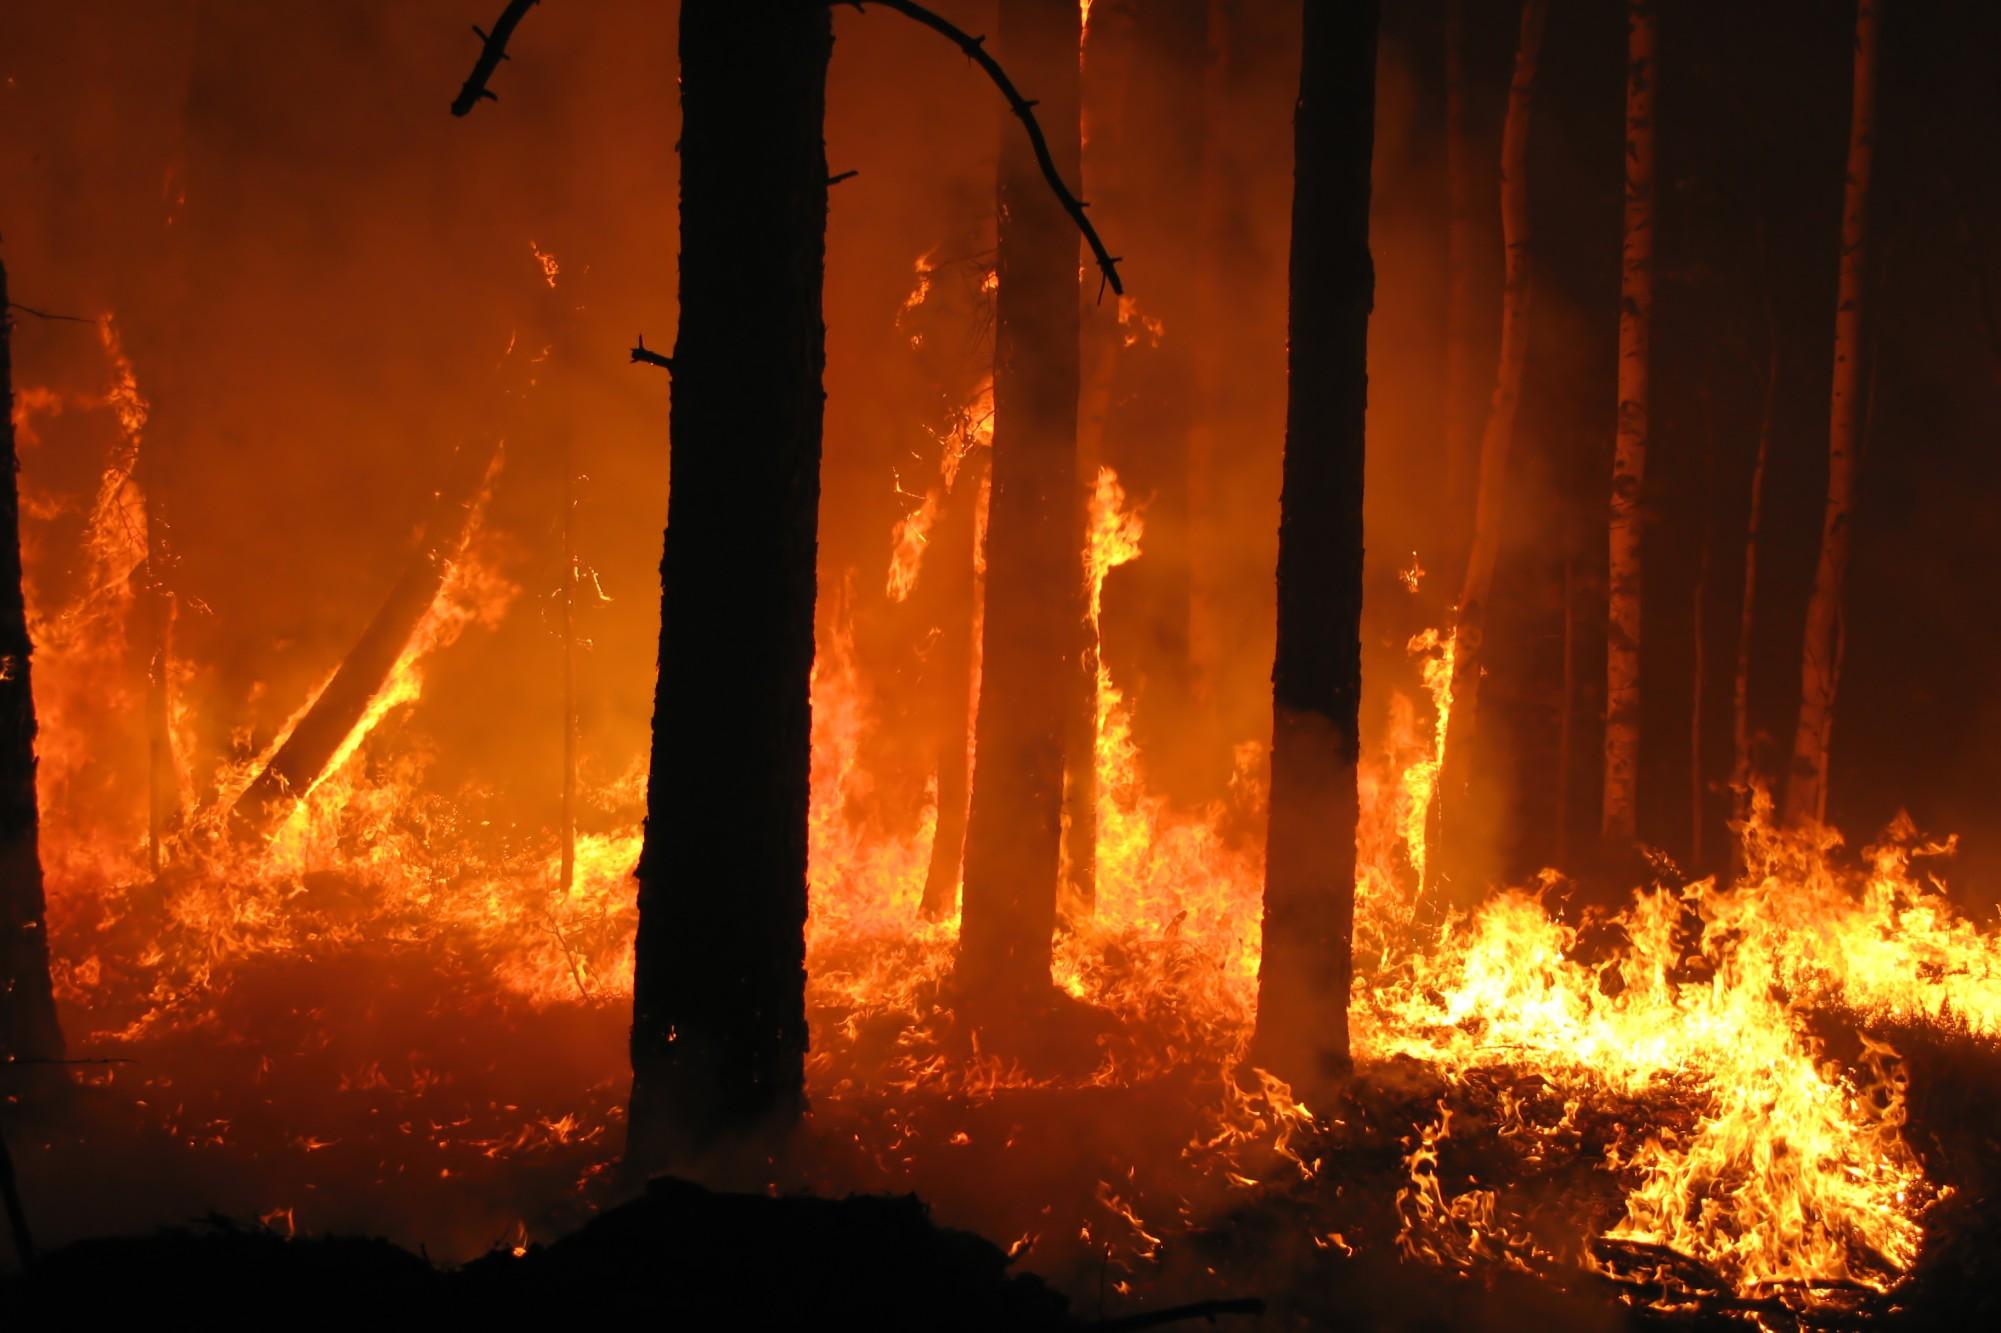 Incendio al bosco Mendola di Misilmeri: 20 ettari carbonizzati